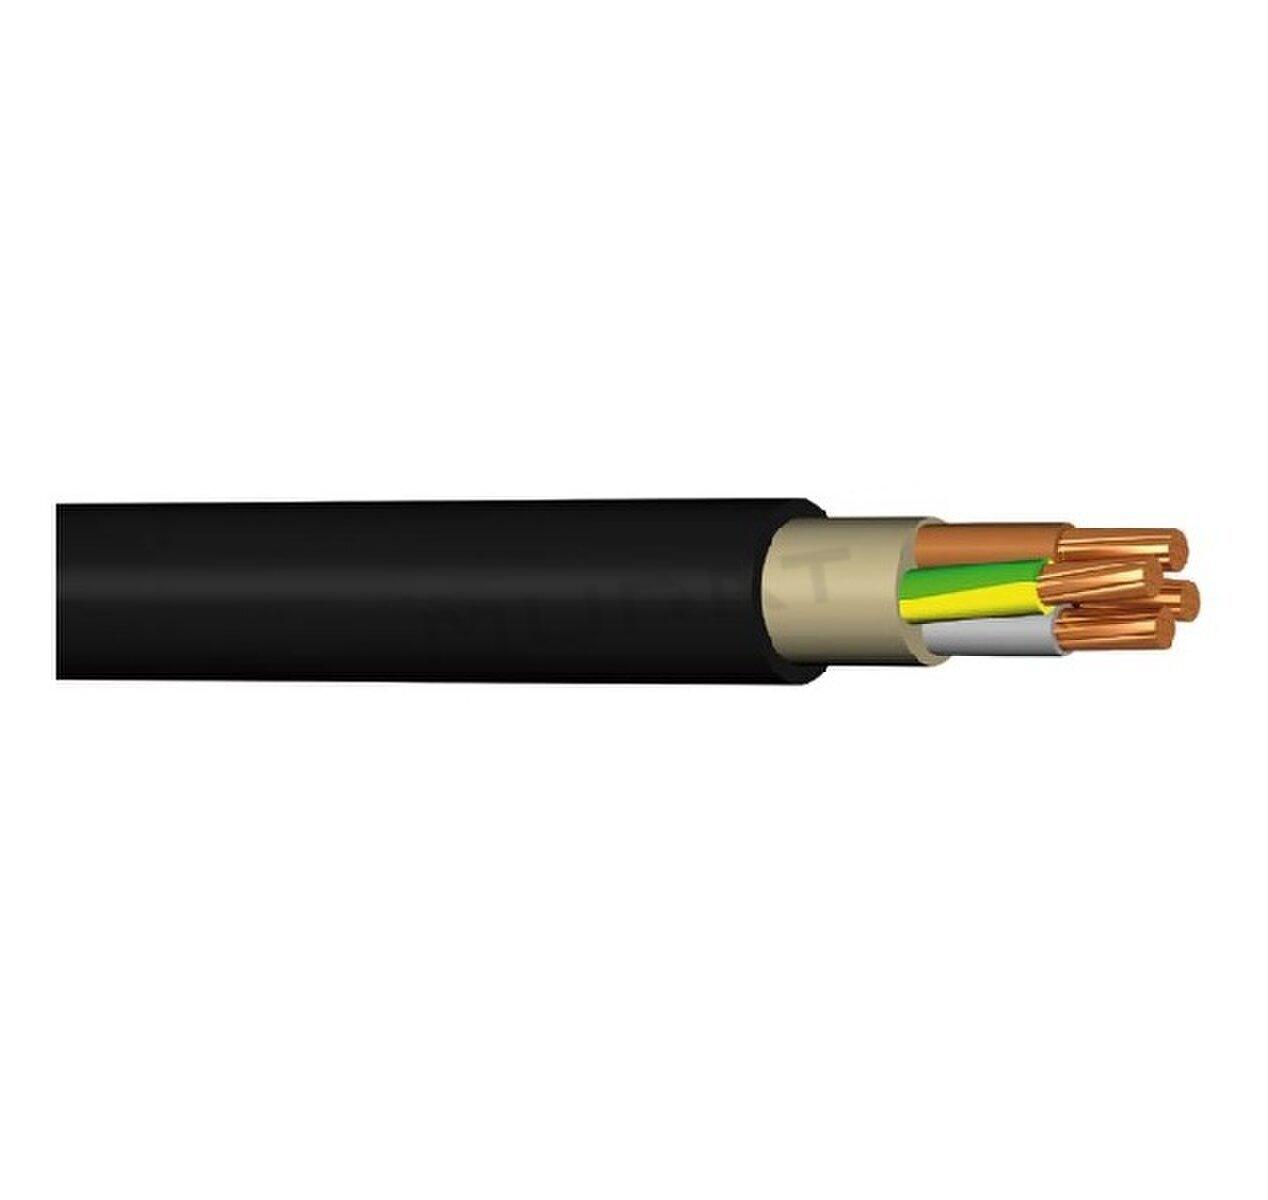 Kábel NYY-J 5x16 mm2 RE silový